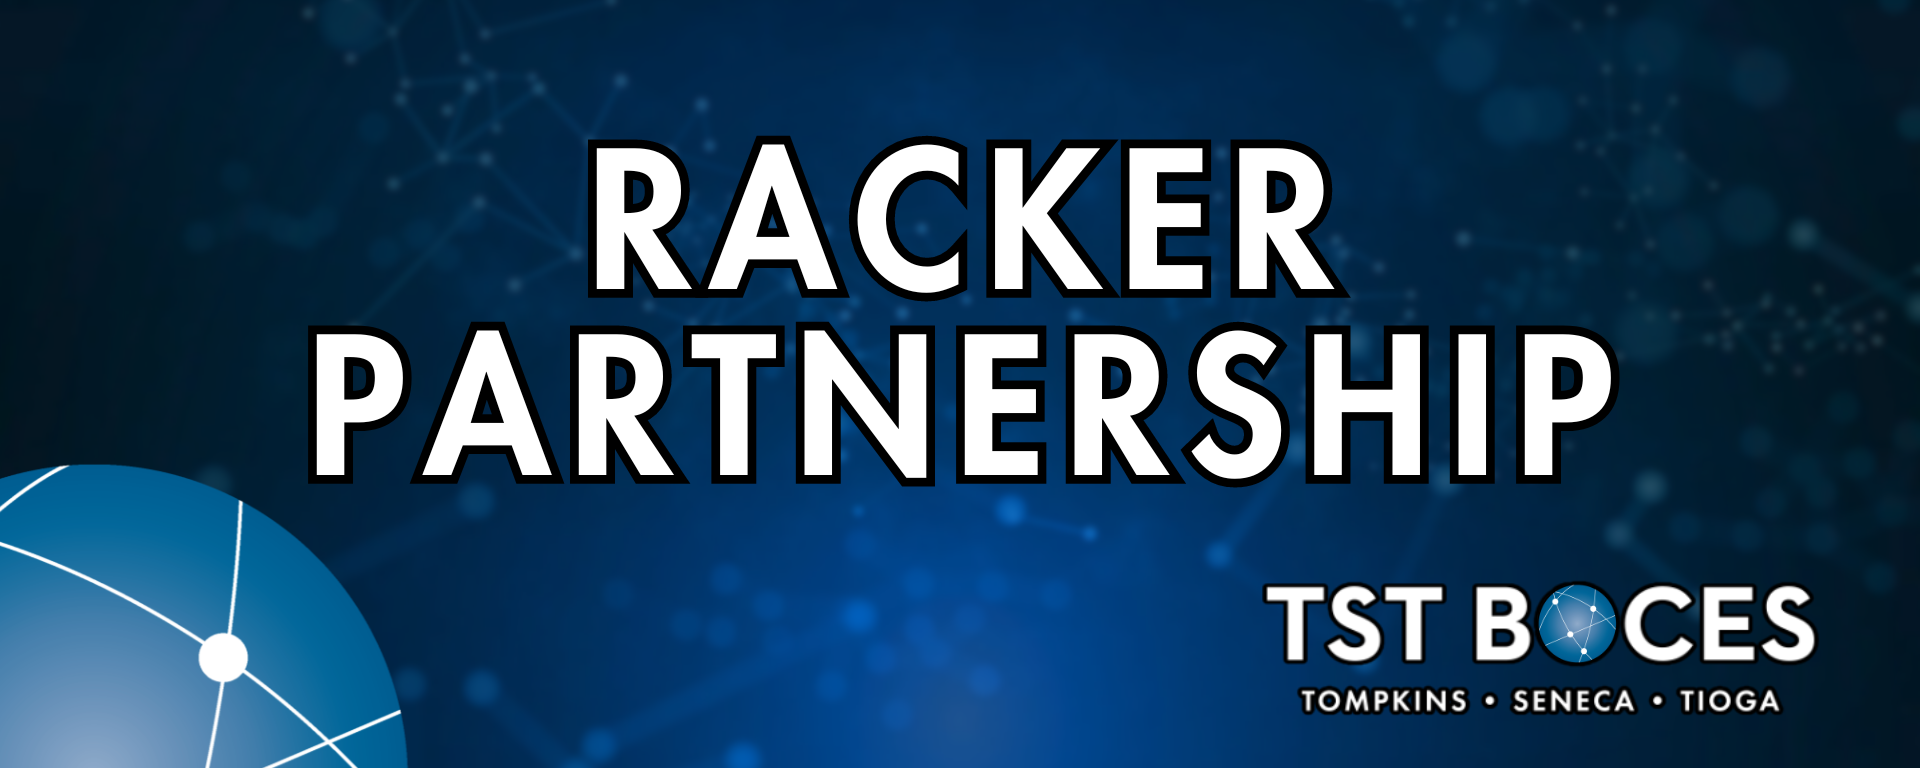 racker partnership banner